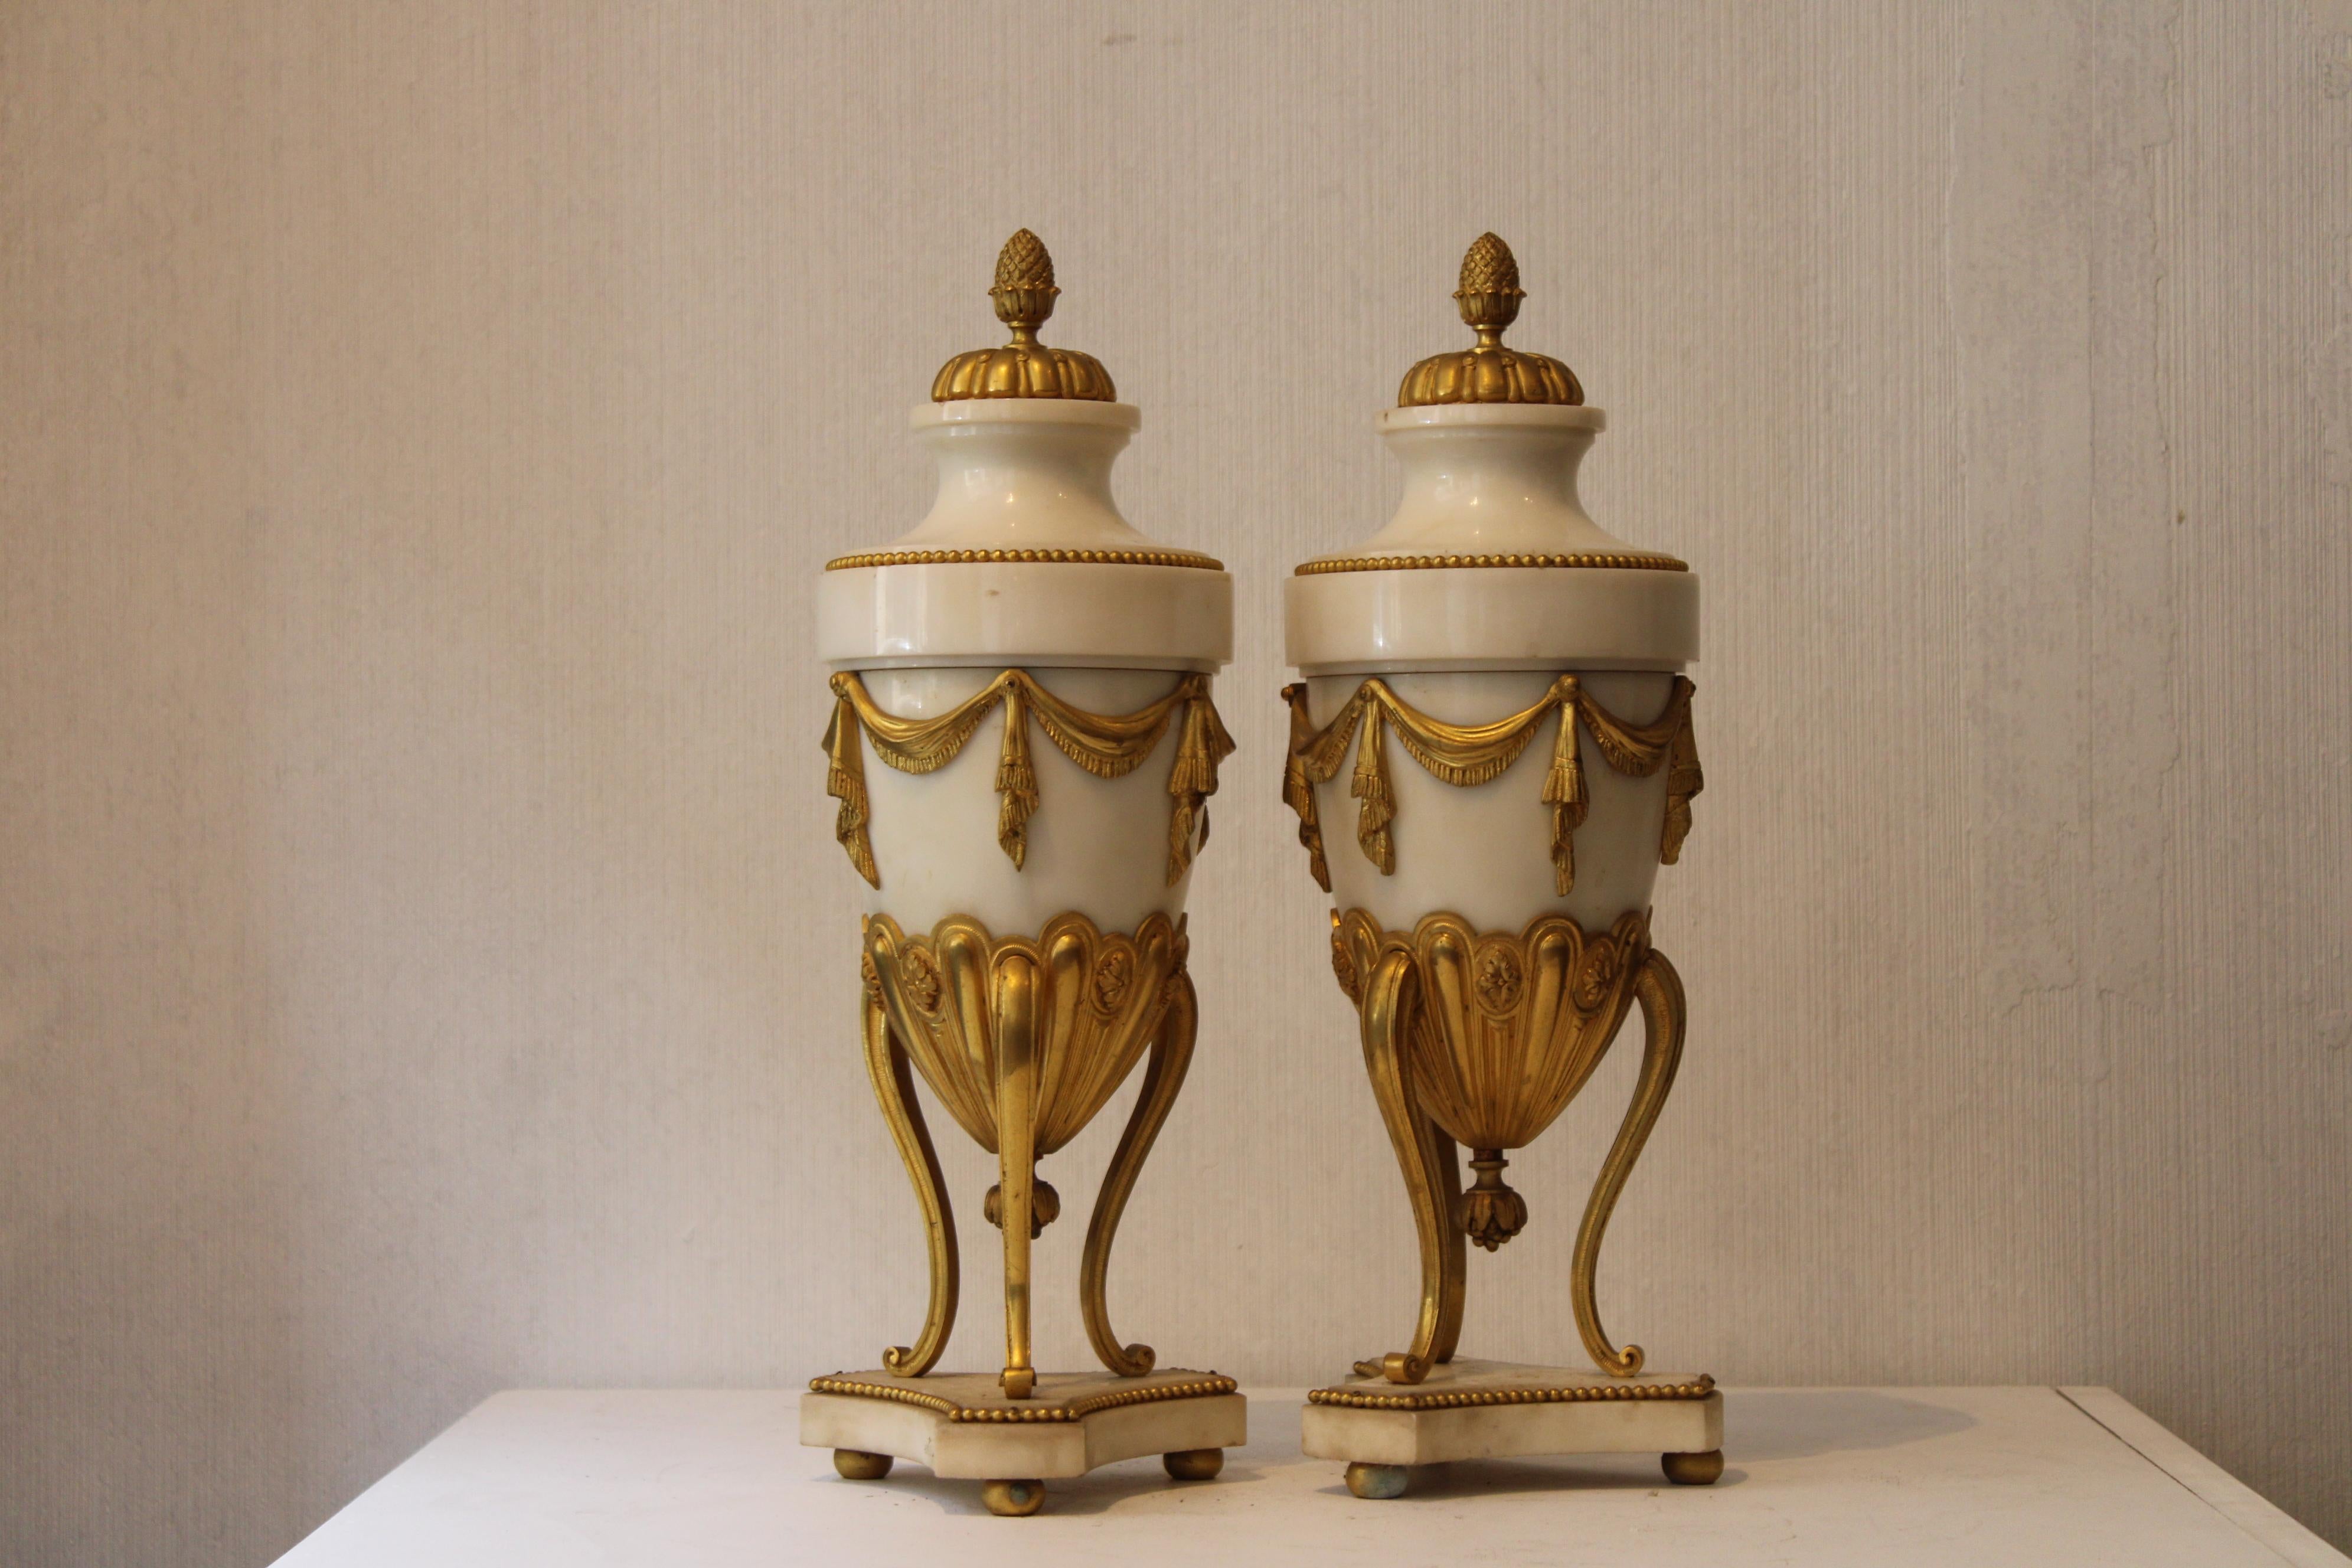 Paar Cassolettes aus dem 19. Jahrhundert. Marmor und vergoldete Bronze, im Stil von Ludwig XVI.